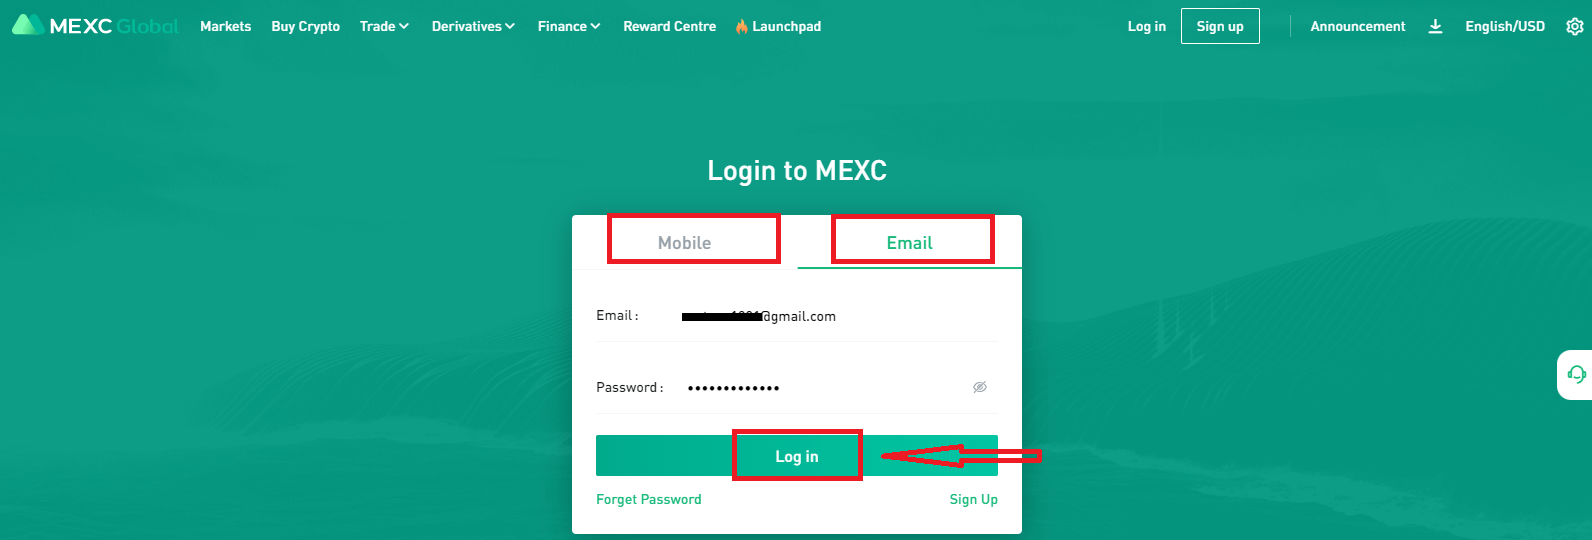 كيفية تسجيل الدخول والبدء في تداول العملات المشفرة في MEXC